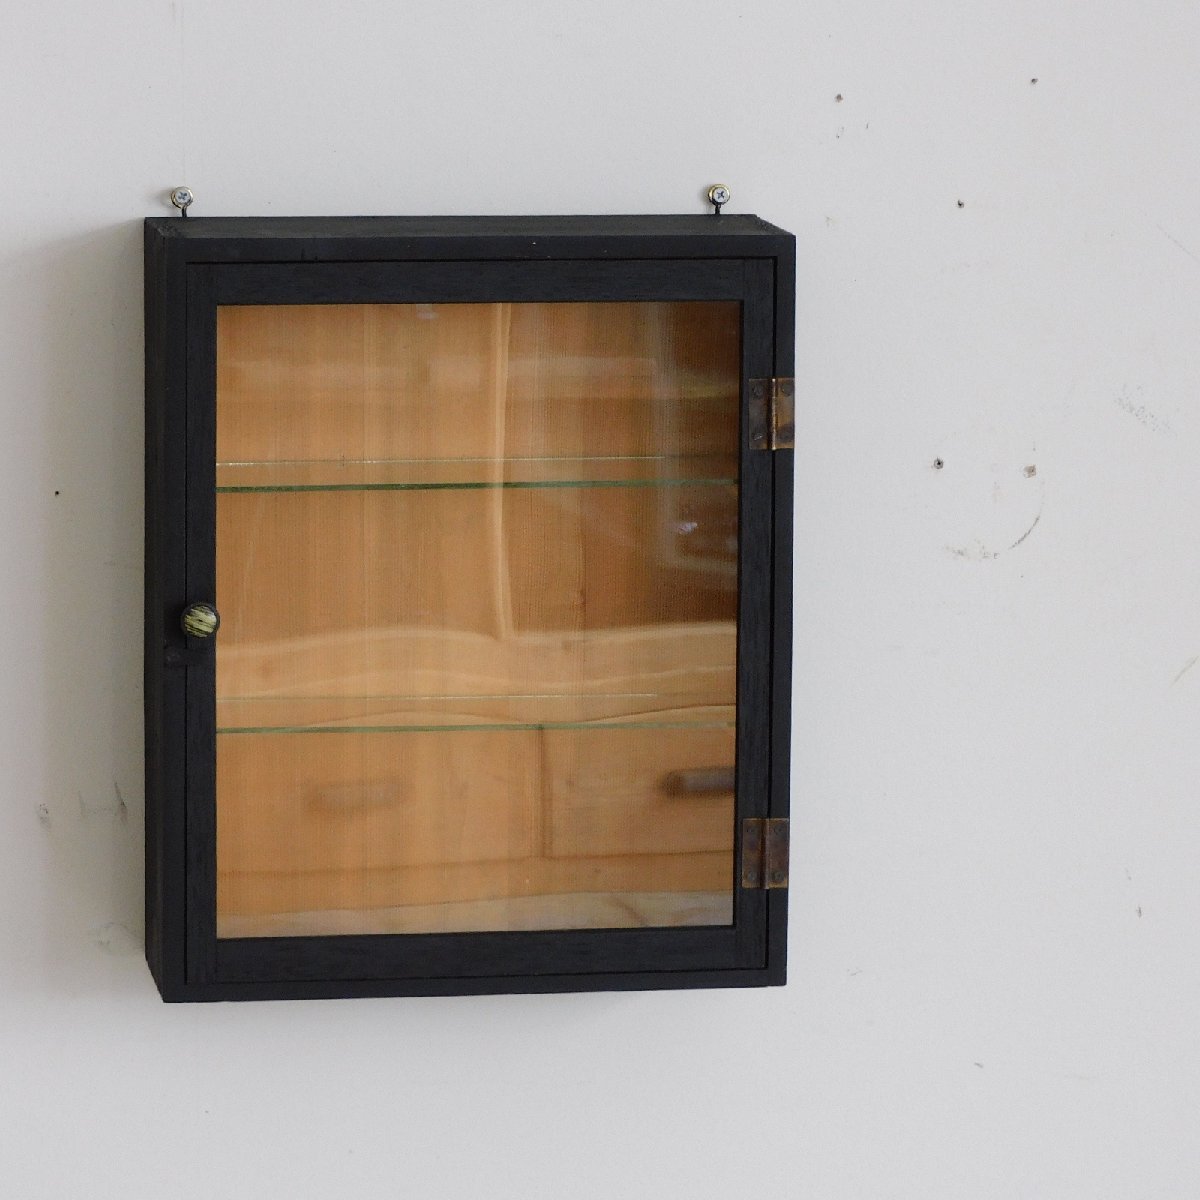 ふるい黒色の壁掛けショーケース HK-a-02853 / 吊り棚 キャビネット ケビント ガラスケース 無垢材